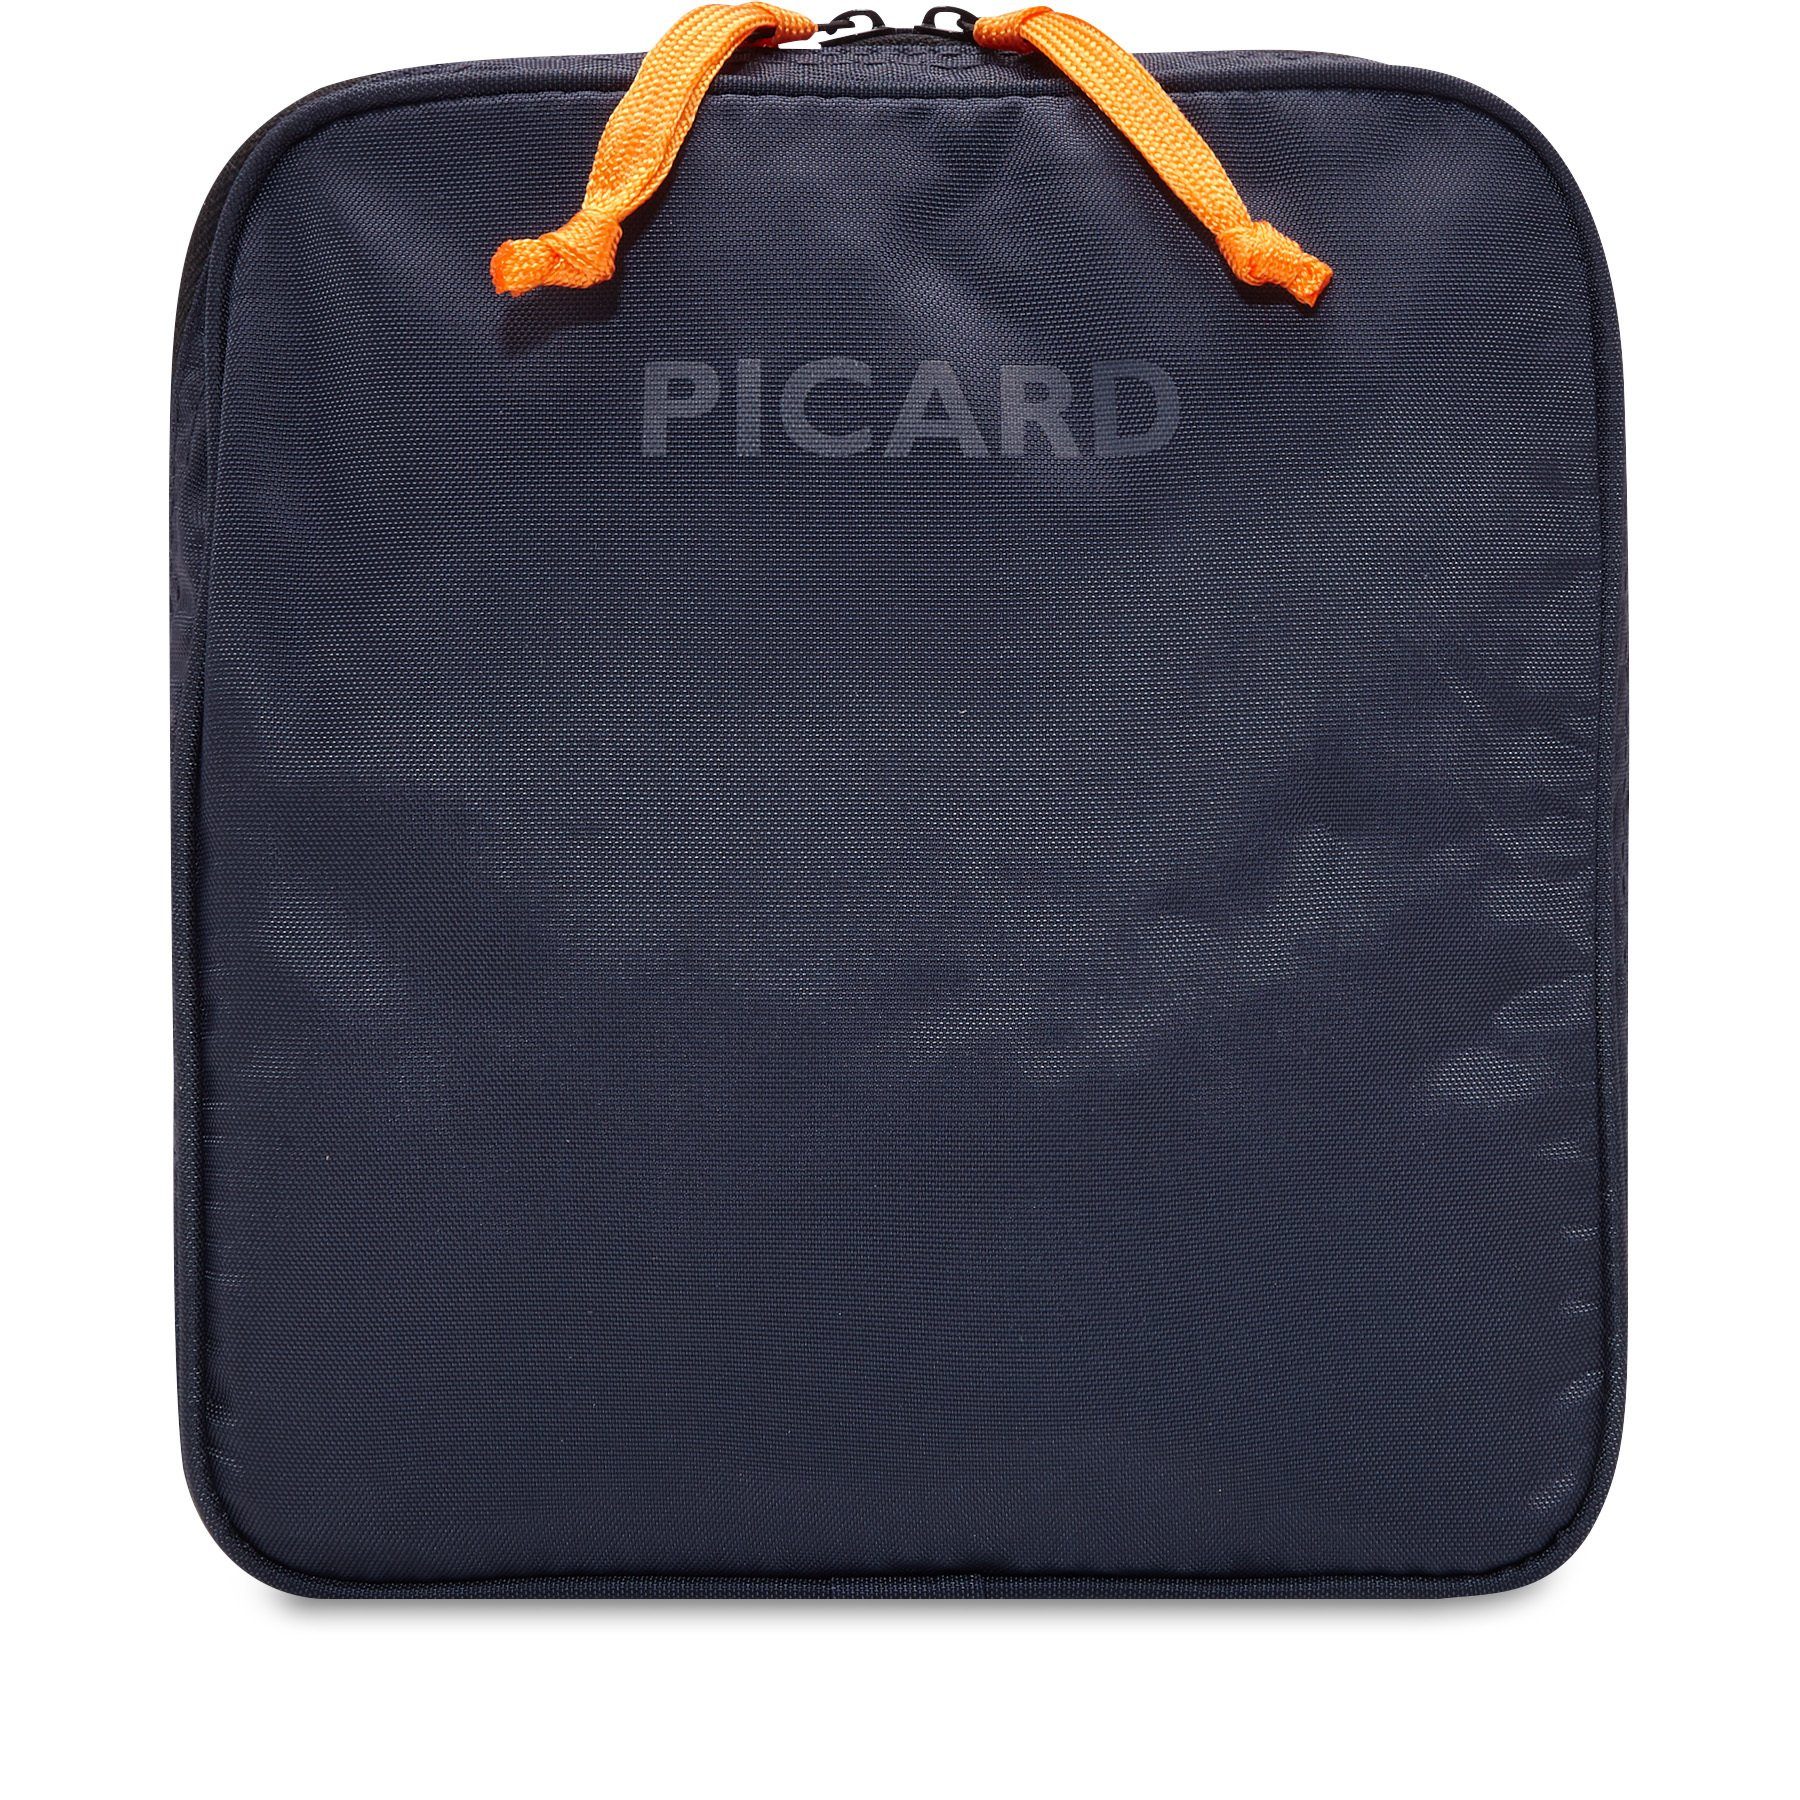 Reisetasche Nylon Hokuspokus aus Picard PICARD Reisetasche